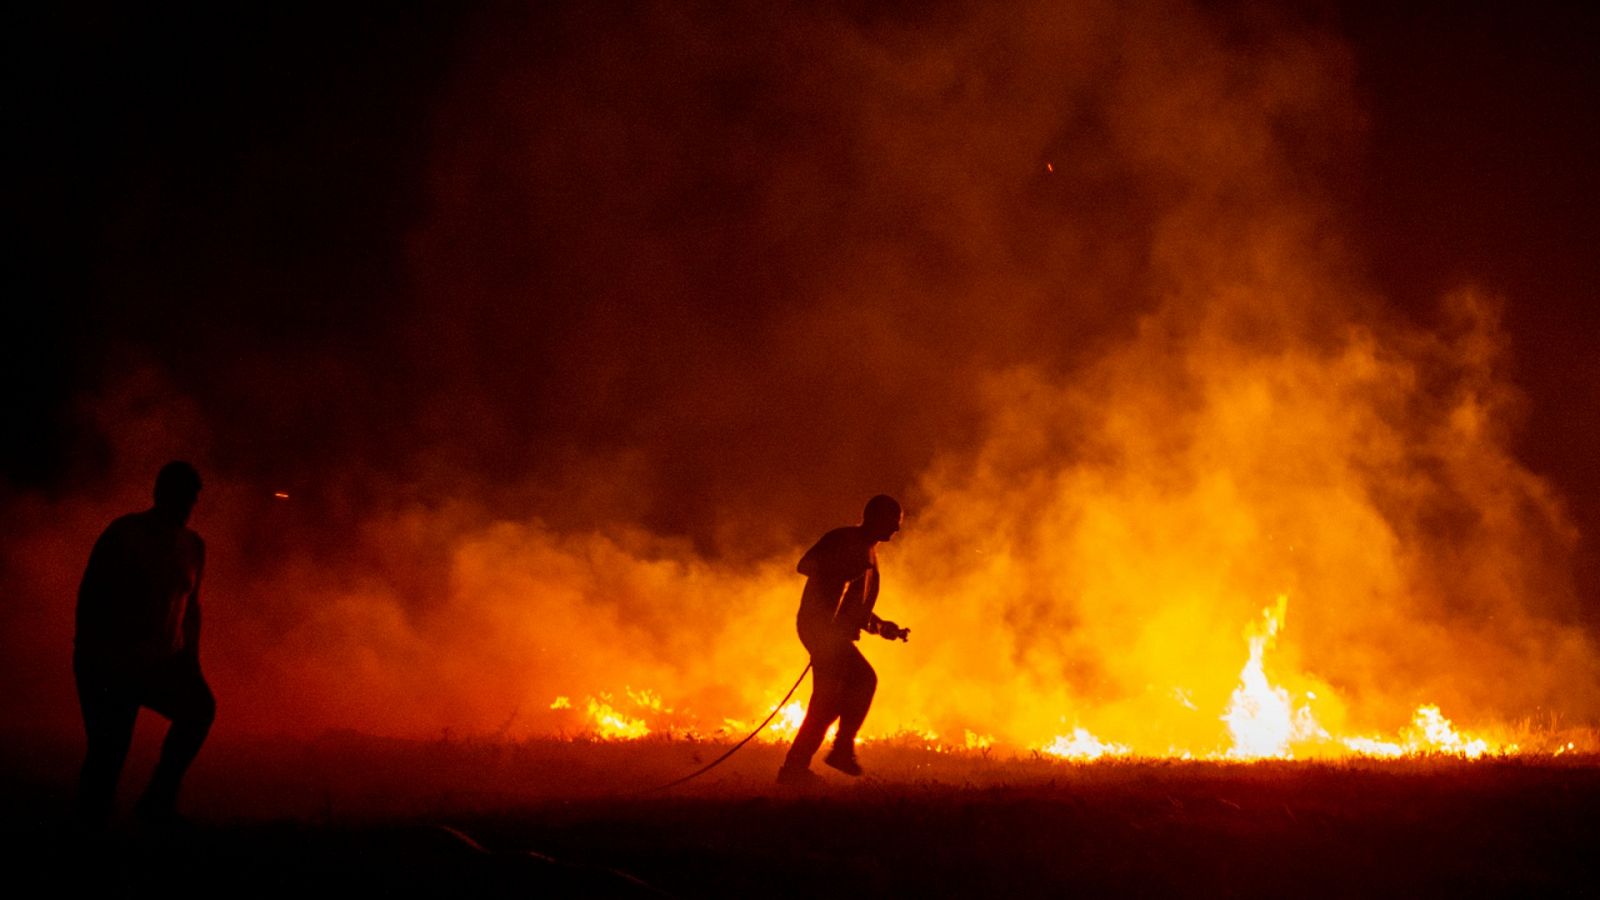 El fuego avanza sin control en Ávila y en Boiro, A Coruña, ha quemado ya 2.000 hectáreas